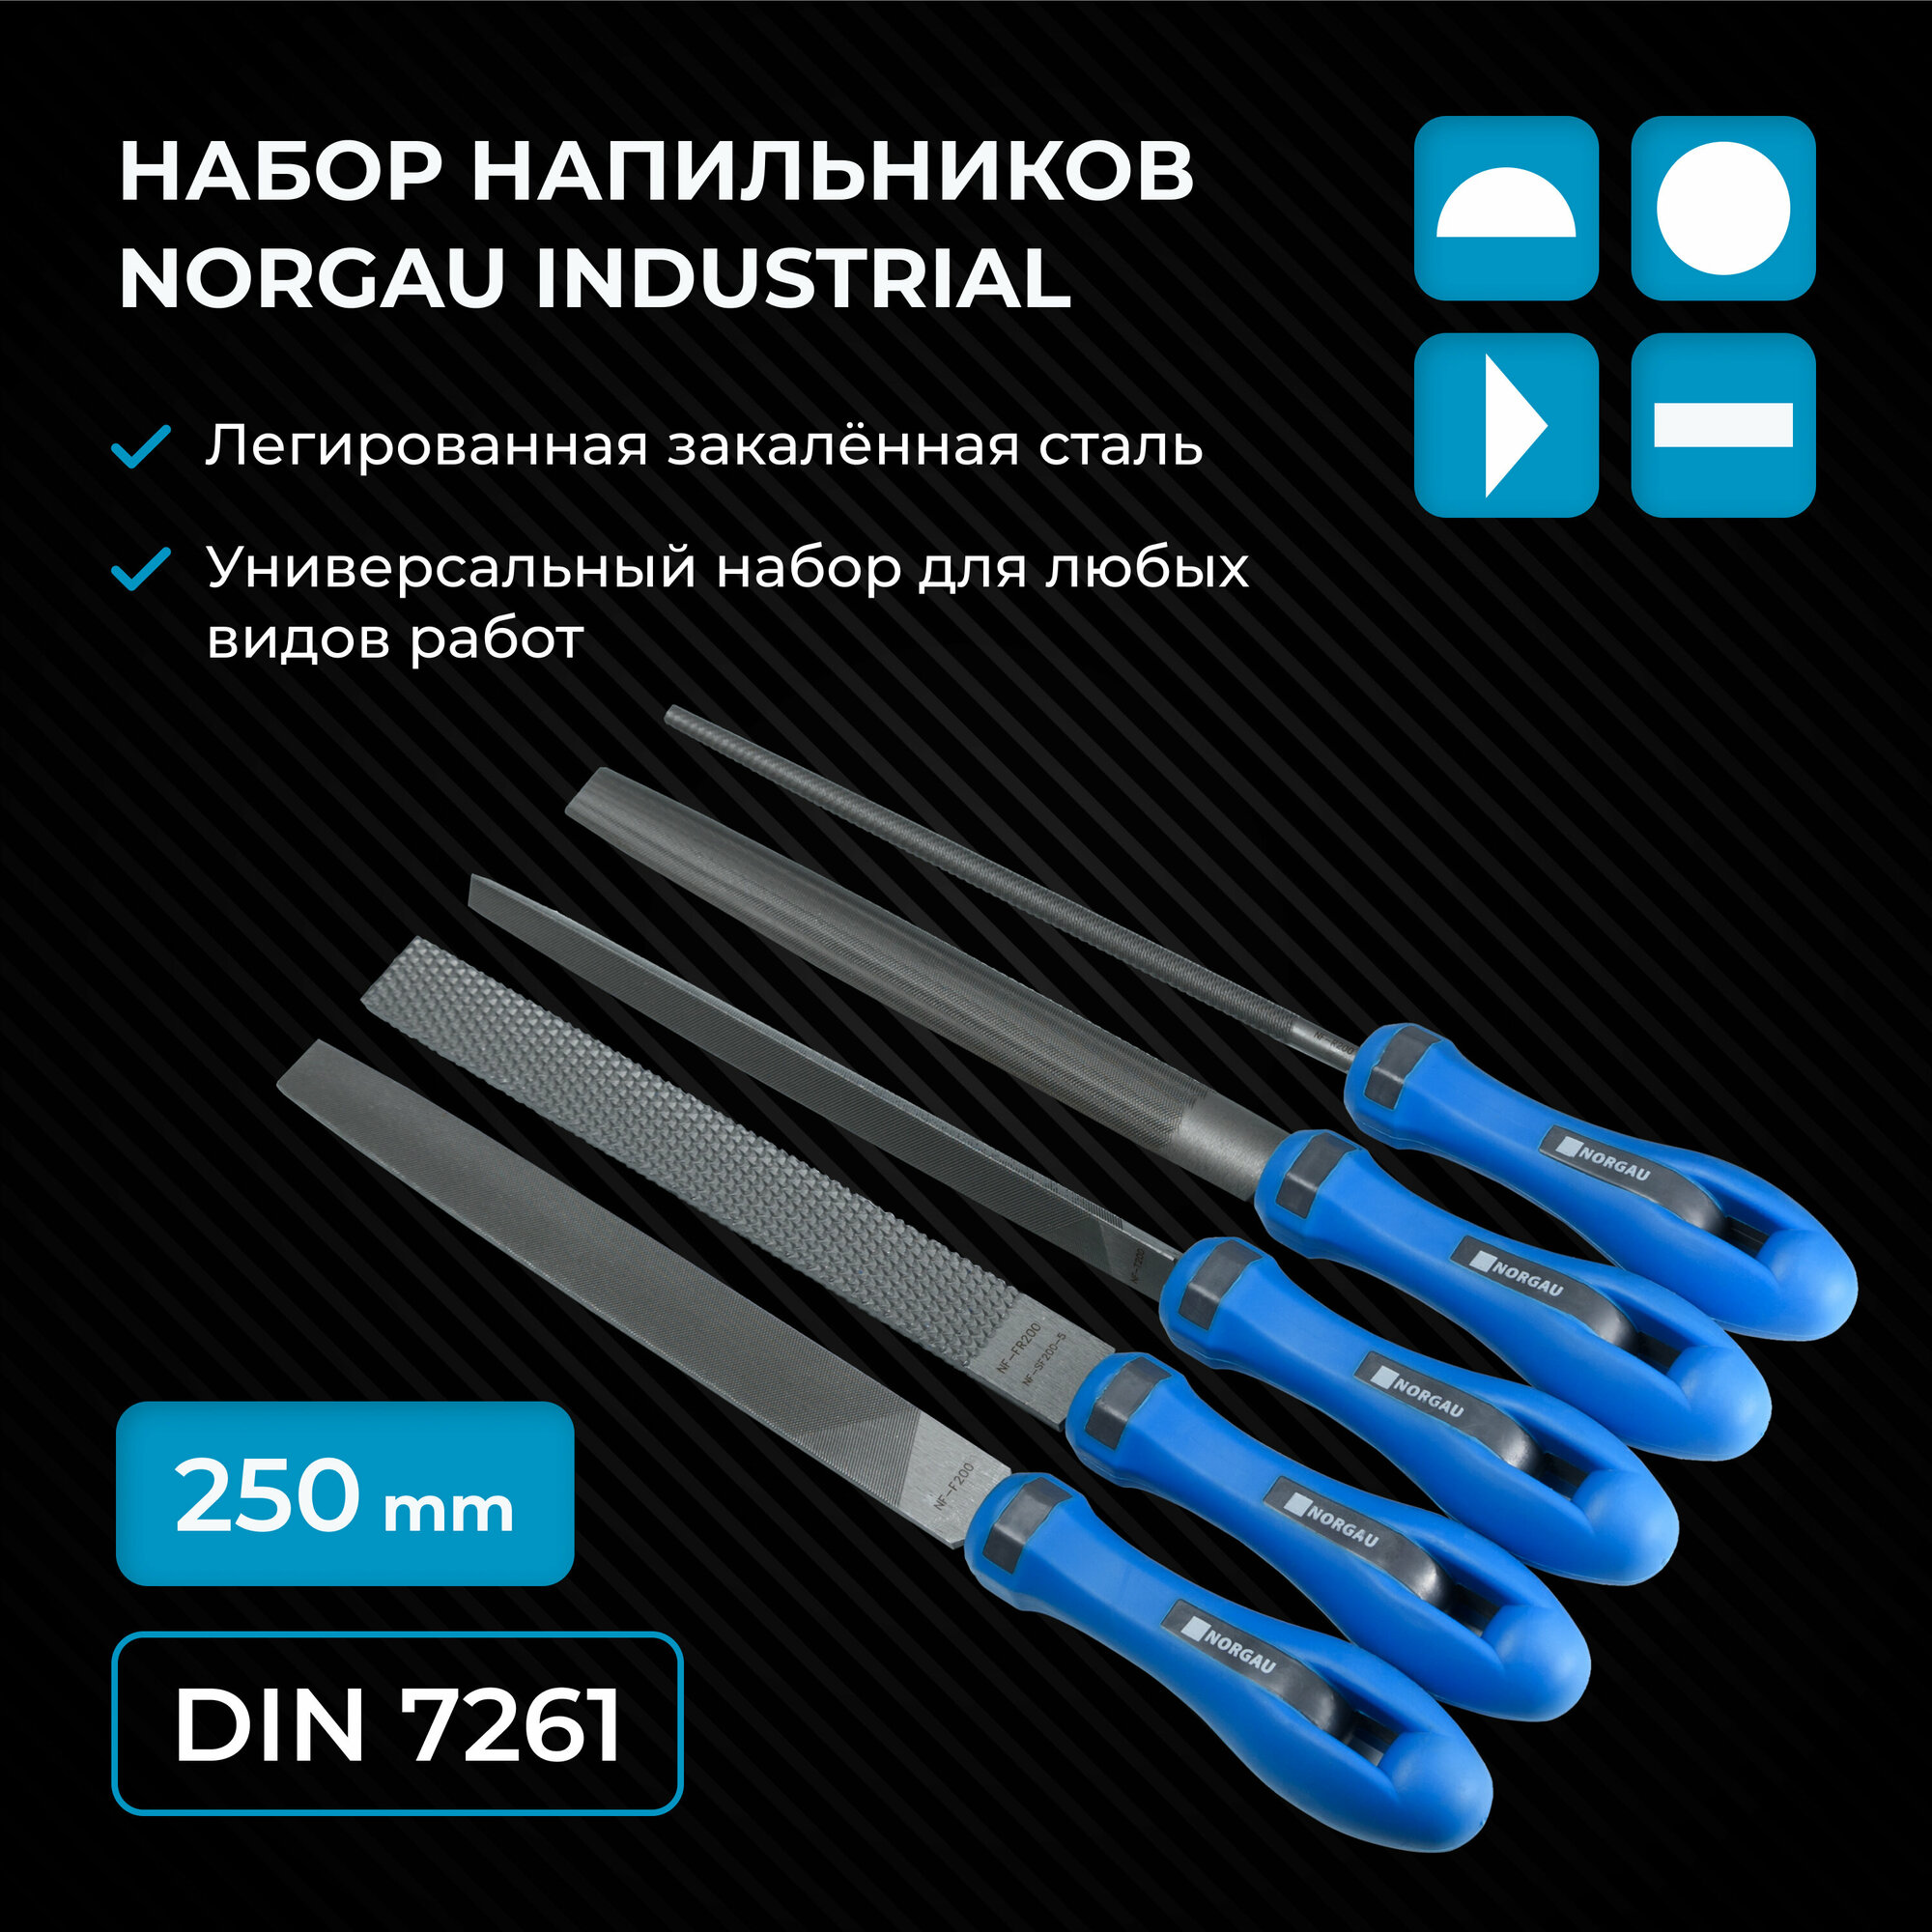 Набор напильников по металлу NORGAU Industrial 250 мм с двухкомпонентной рукояткой в сумке-скатке 5 штук